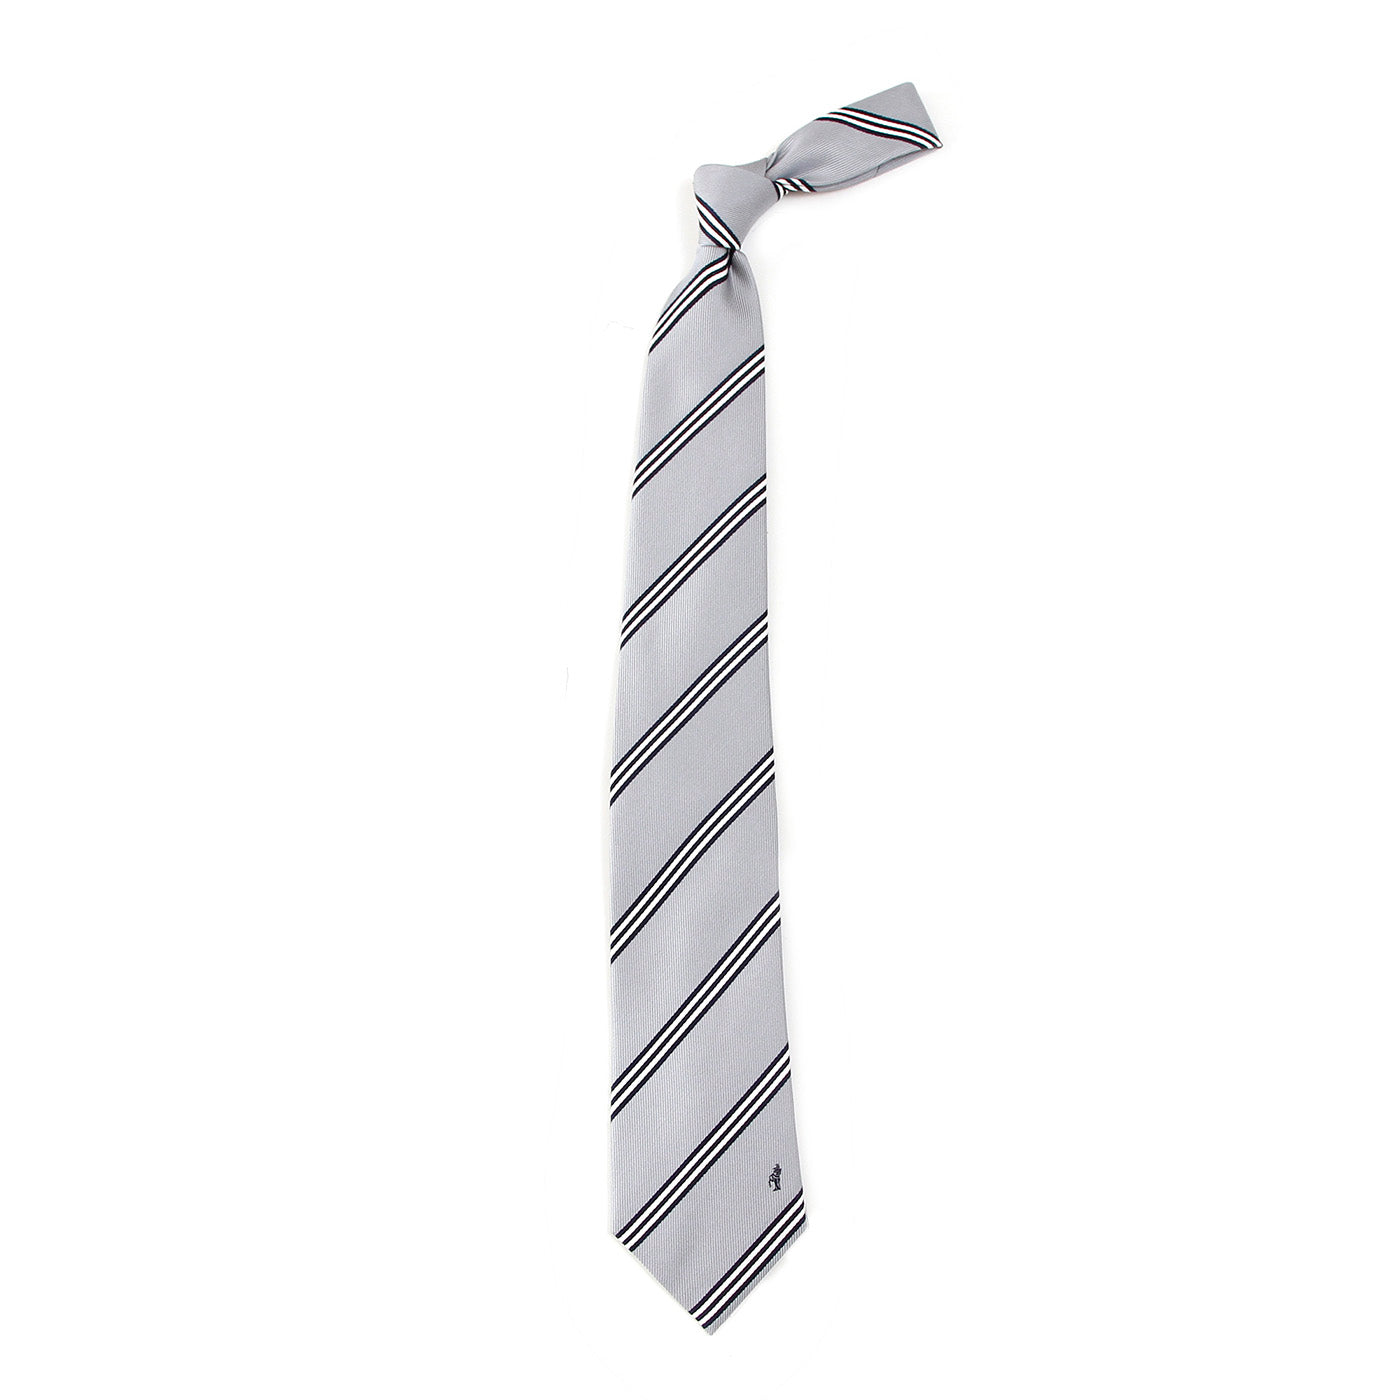 Men’s Jacquard Woven 100% Nishijin Kyoto Silk Tie -07. Be Gentle Striped Pattern Made in Japan FORTUNA Tokyo